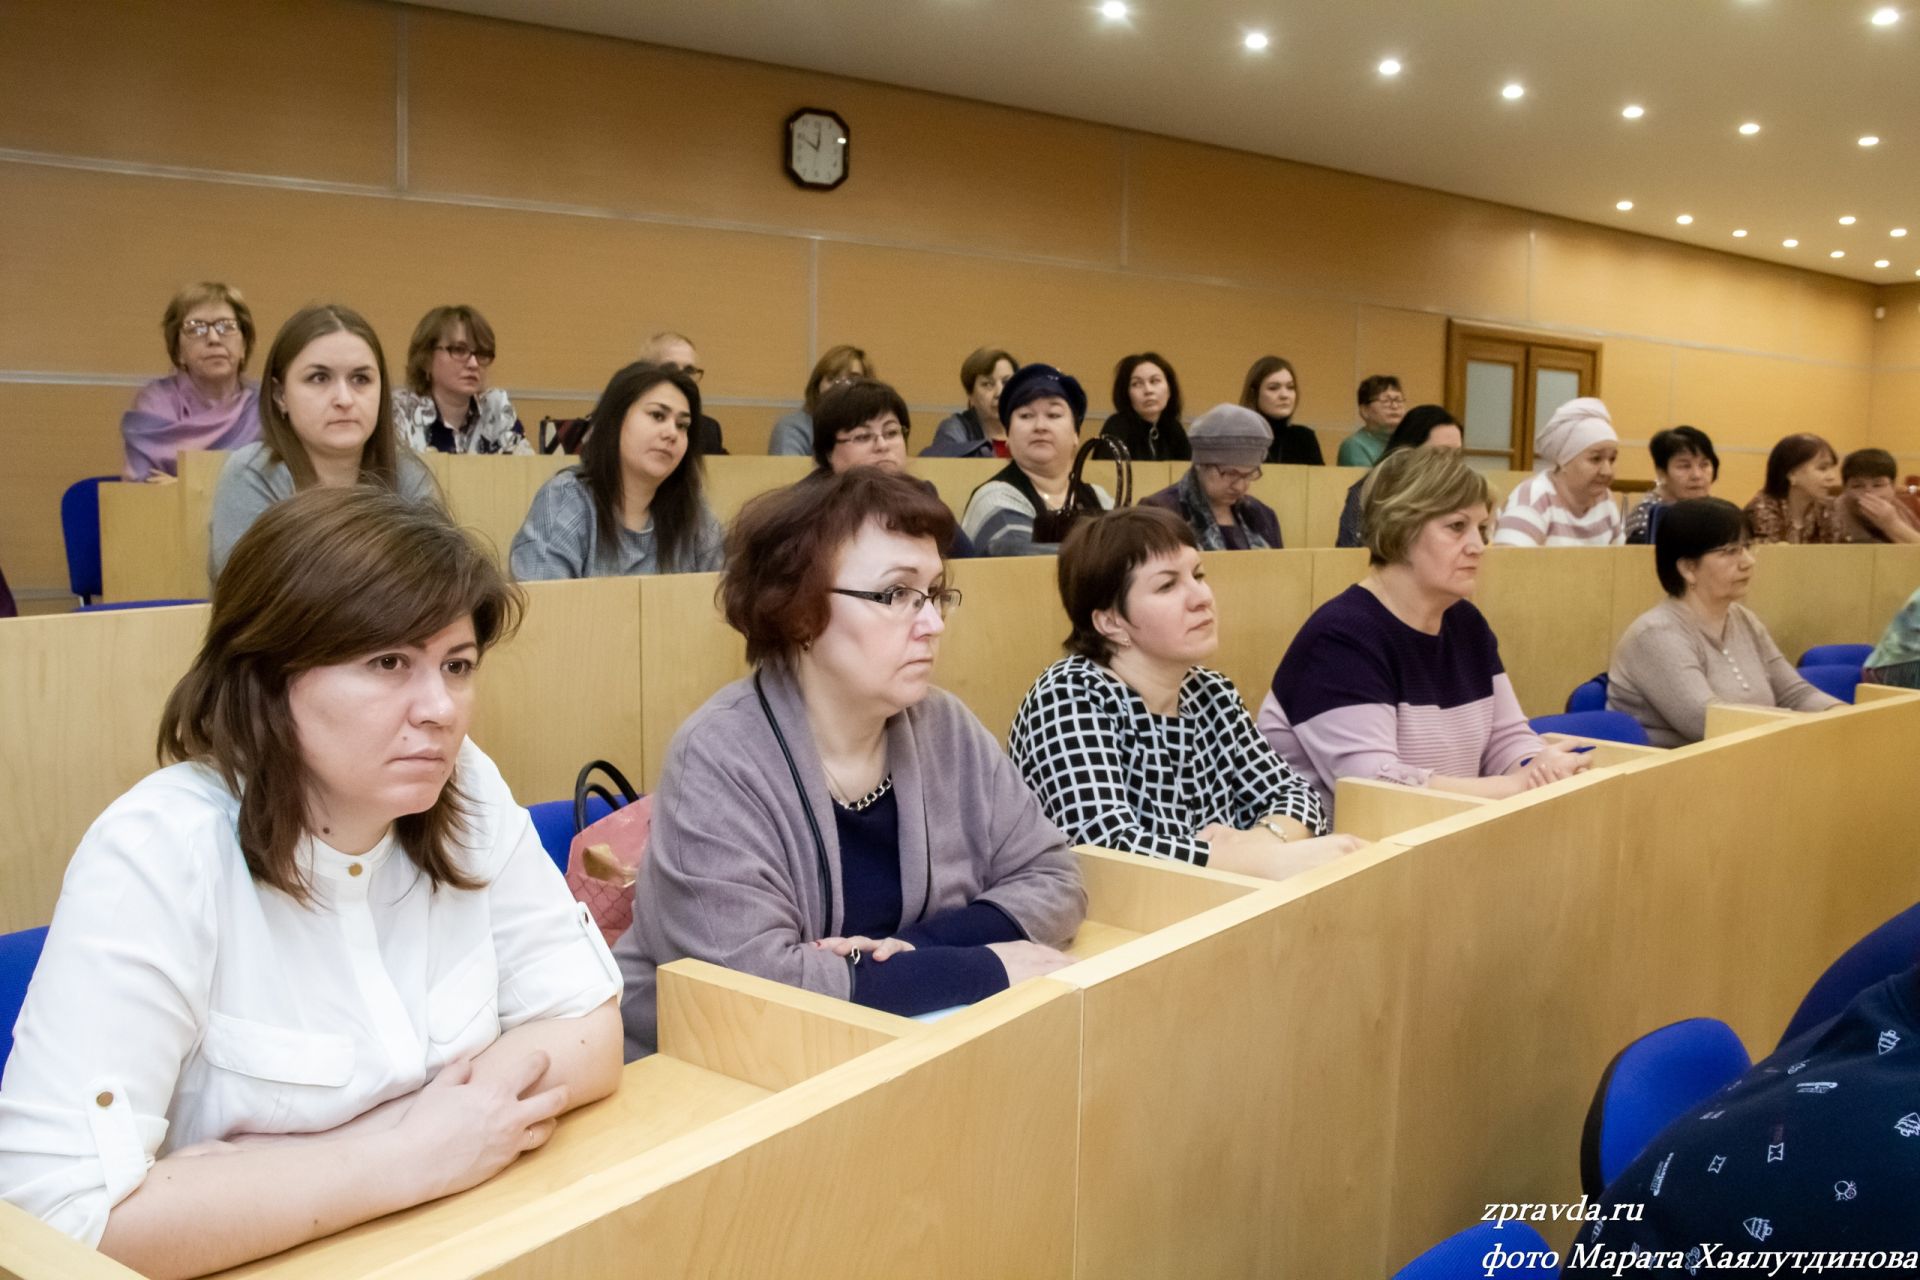 В ЦКиНТ имени Горького состоялся методический семинар по вопросам архивного дела